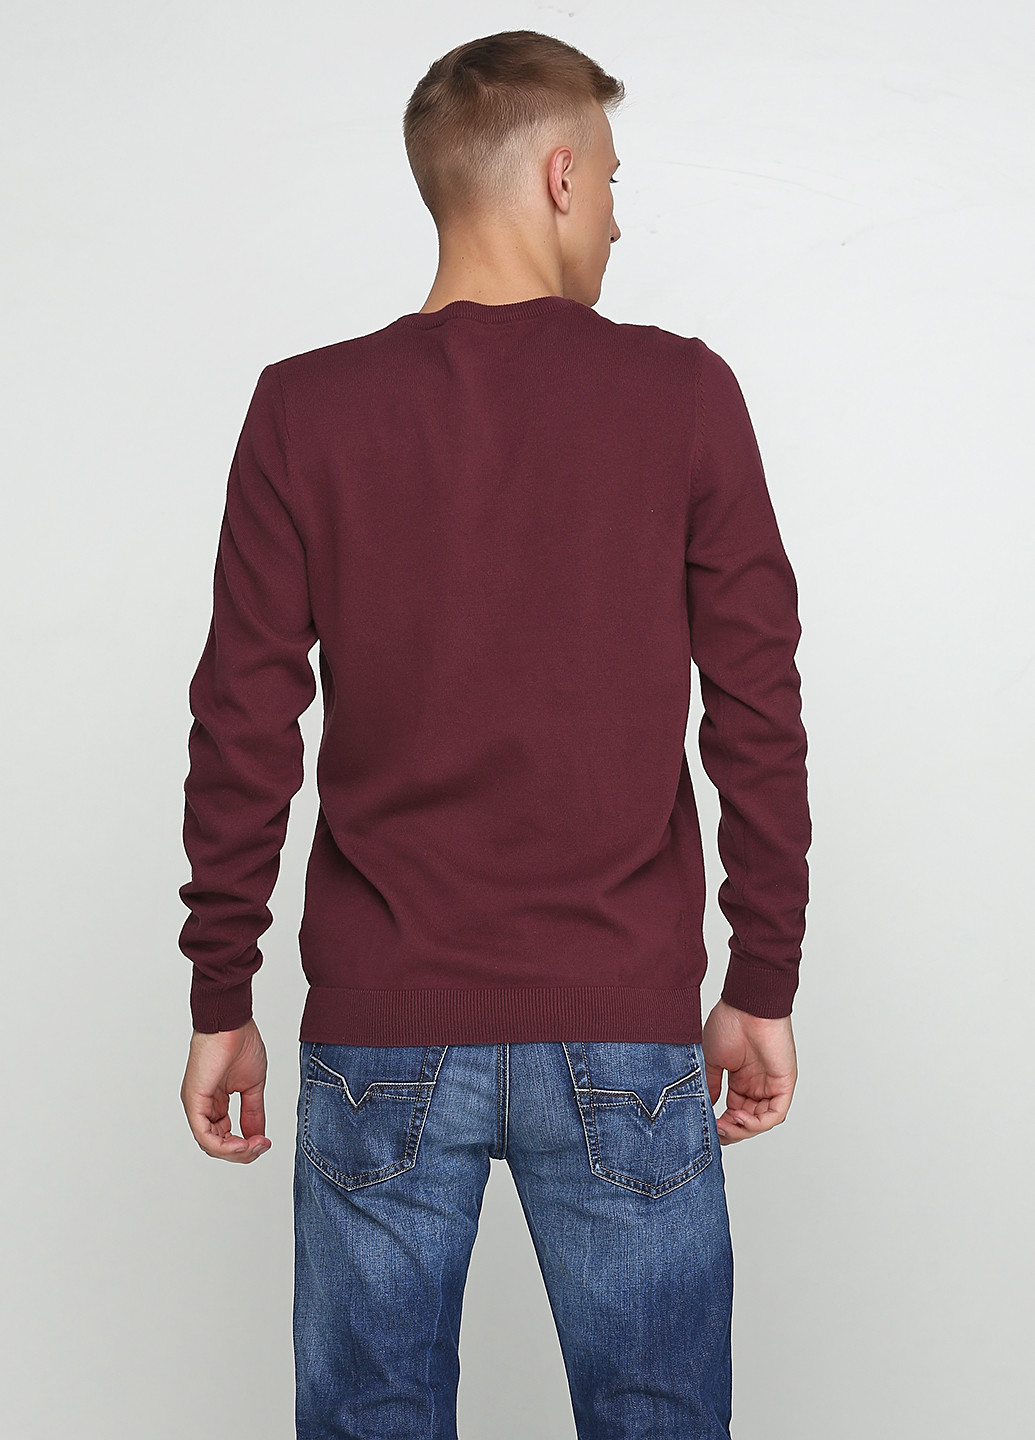 Сиреневый демисезонный пуловер пуловер Jean Pascal